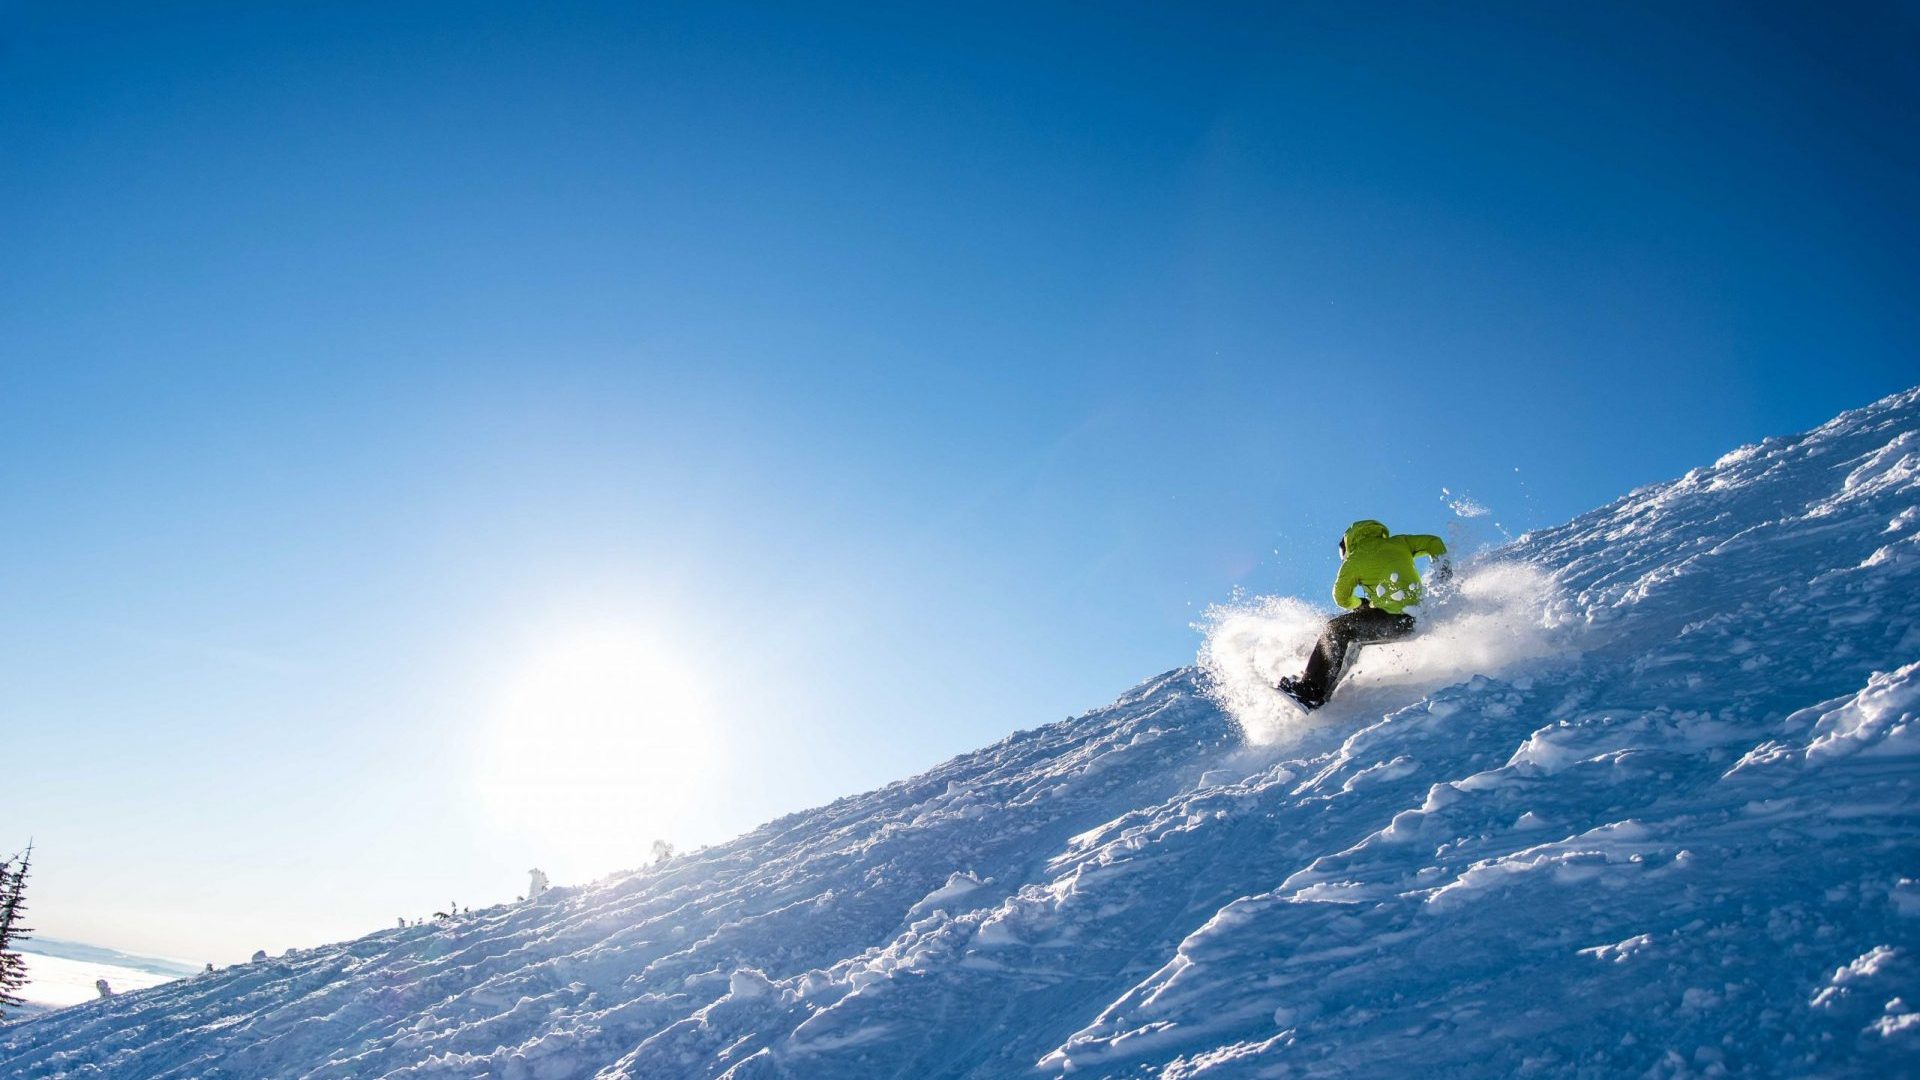 Snowboarder in green jacket skiing varied terrain